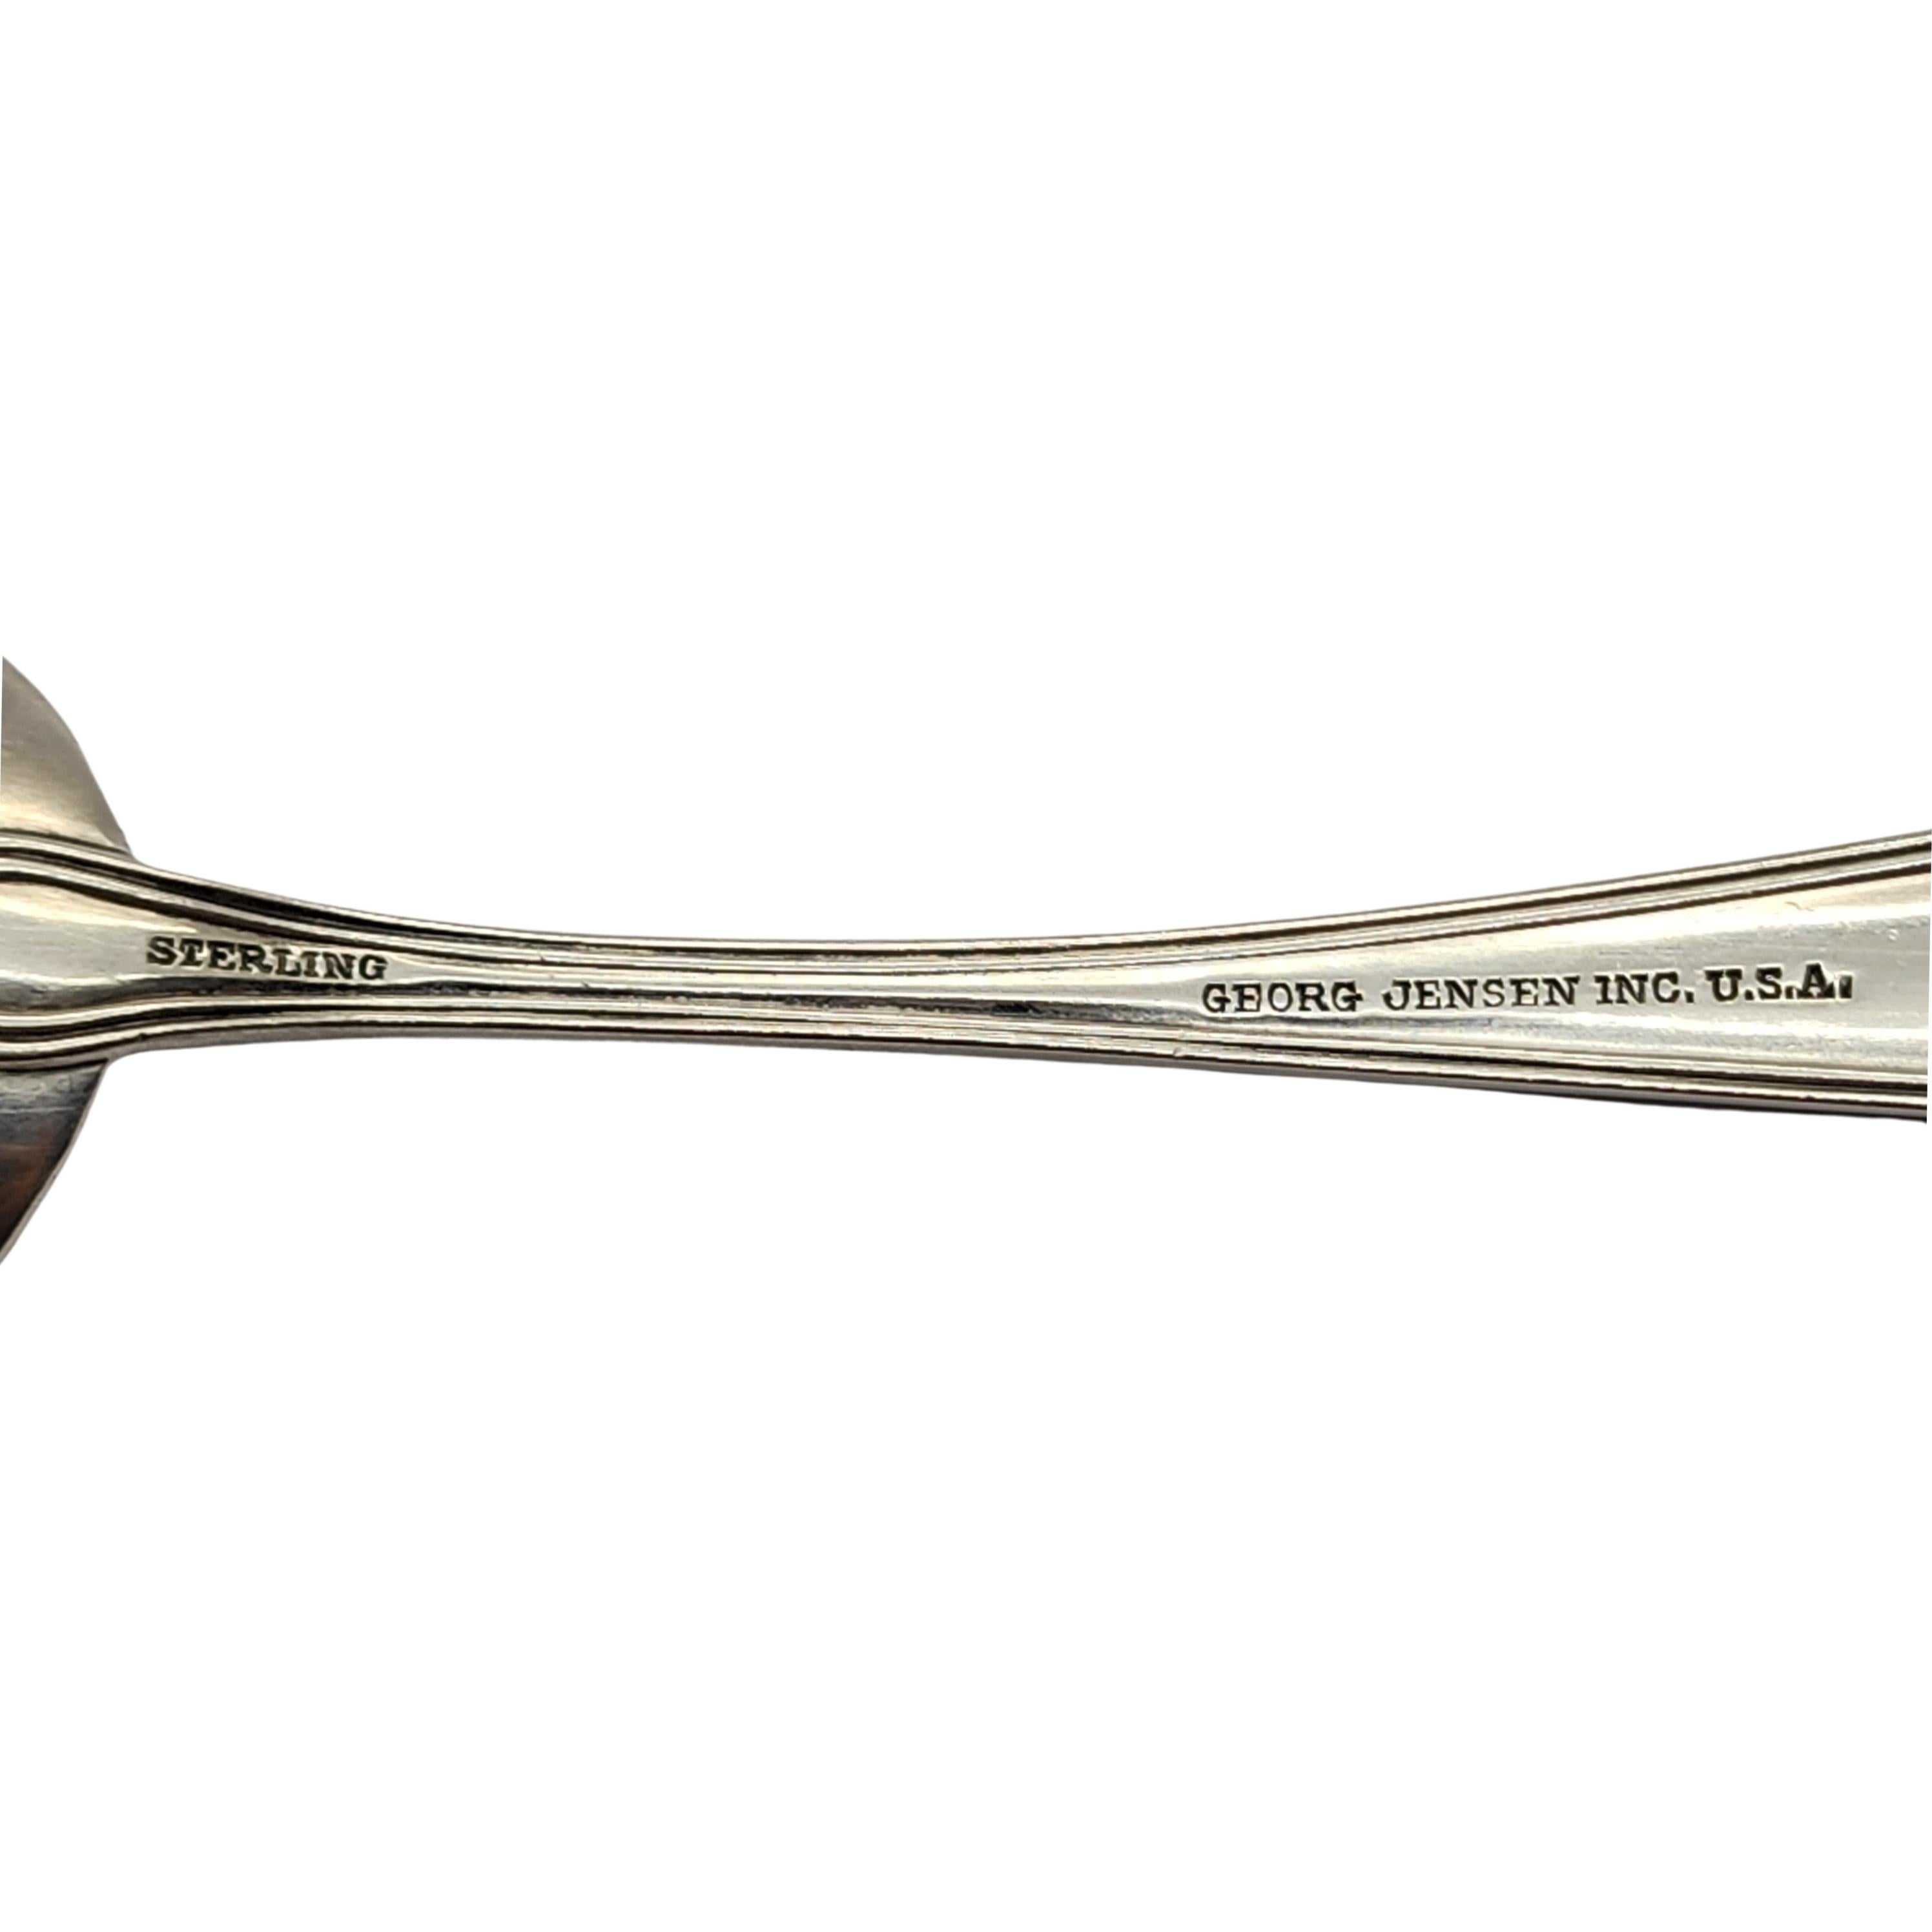 Women's or Men's Georg Jensen USA Sterling Silver Spoon For Sale